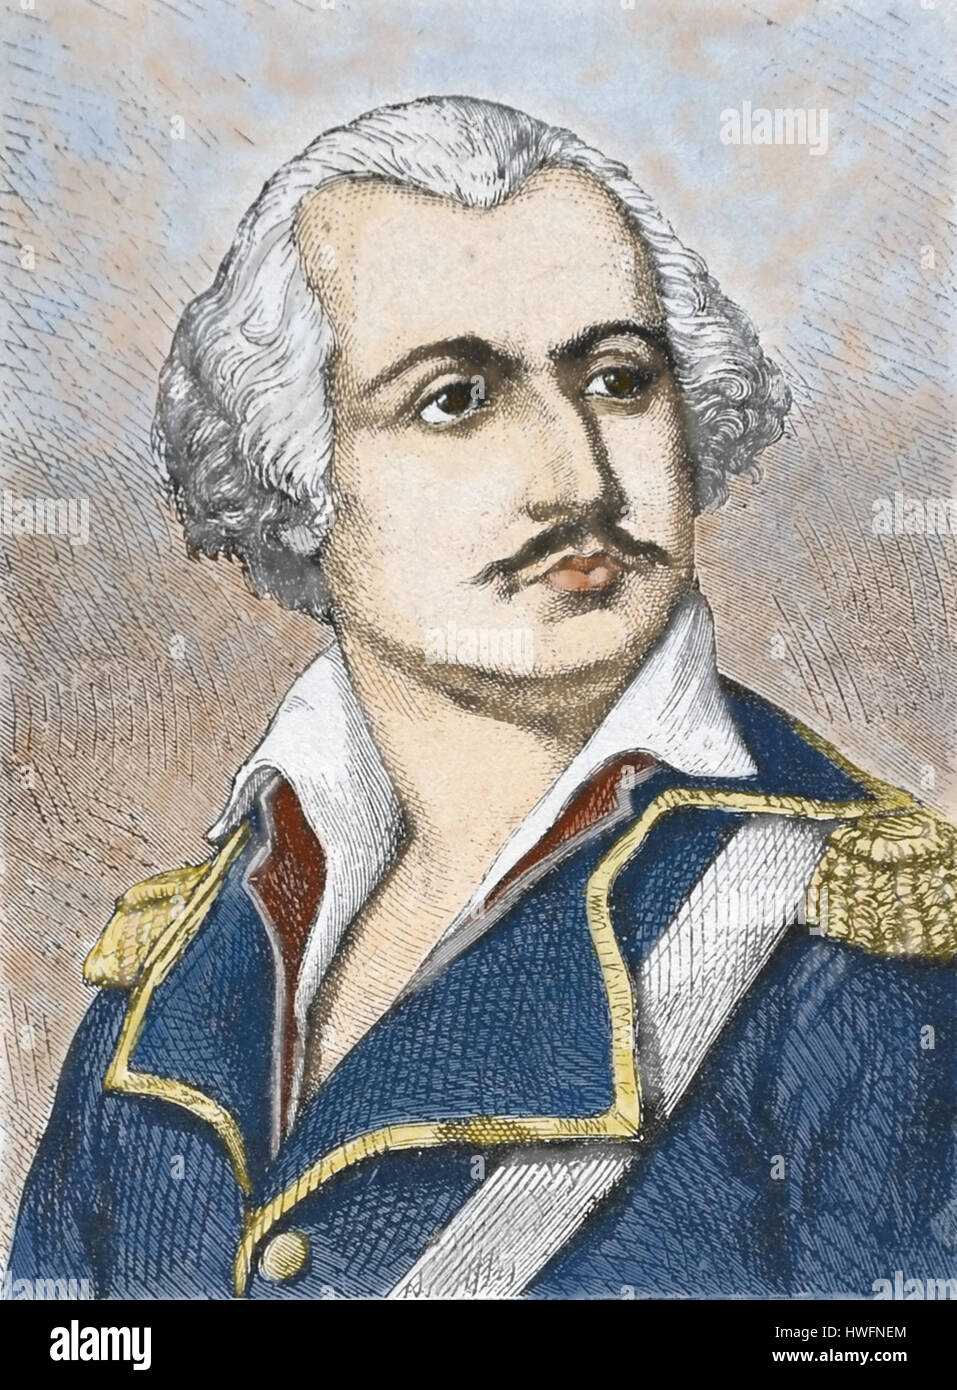 Jean Baptiste François Carteaux . Le général français de la Révolution française et peintre (1751-1813) 18e siècle Banque D'Images